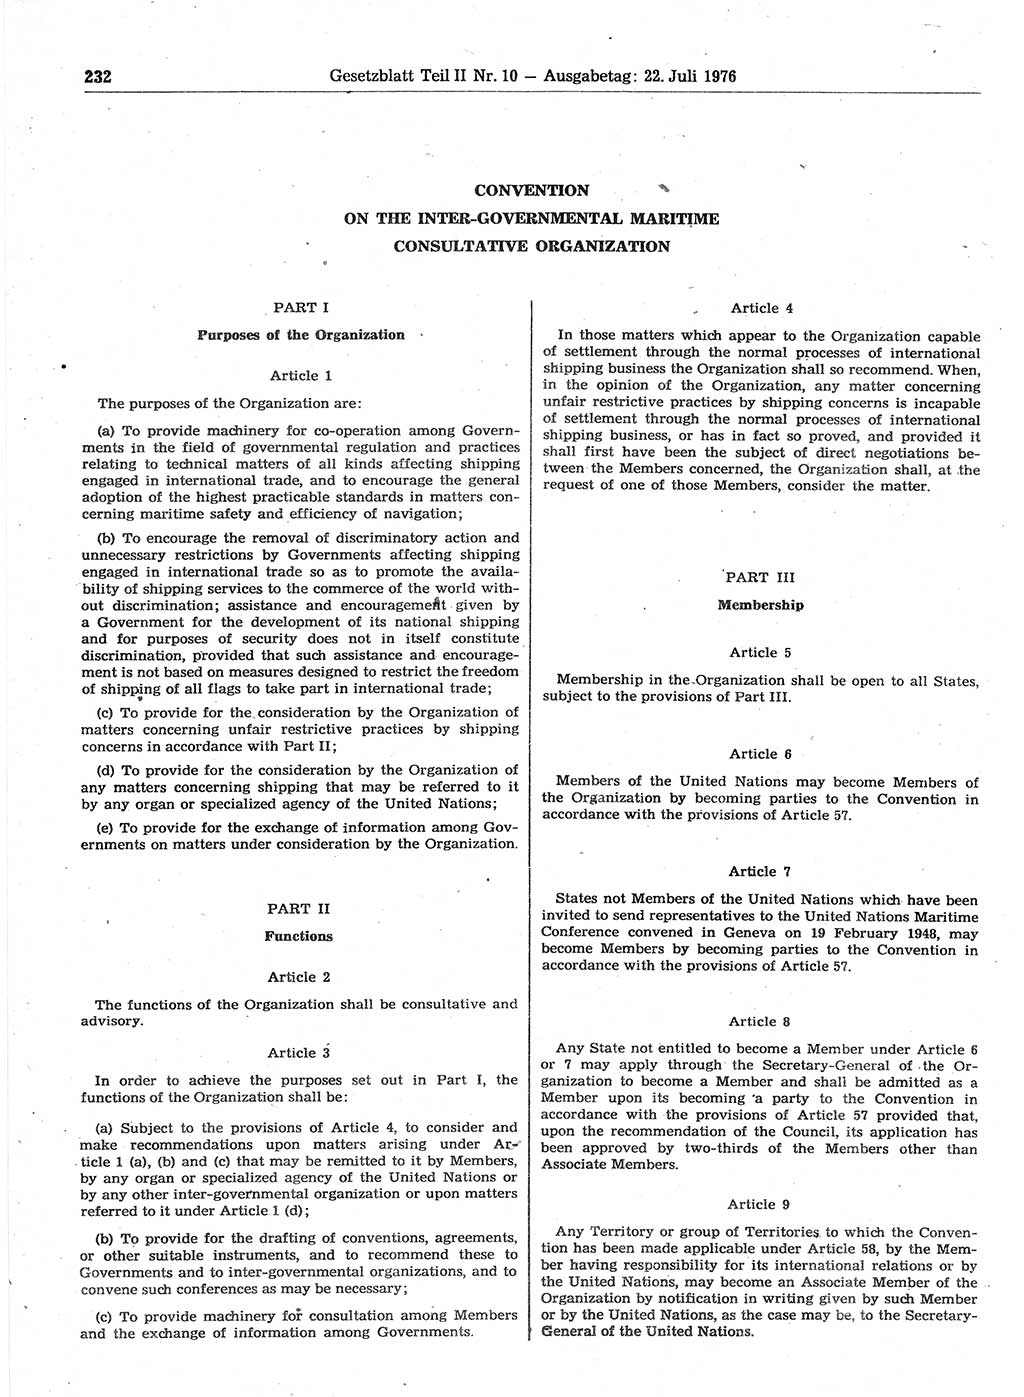 Gesetzblatt (GBl.) der Deutschen Demokratischen Republik (DDR) Teil ⅠⅠ 1976, Seite 232 (GBl. DDR ⅠⅠ 1976, S. 232)